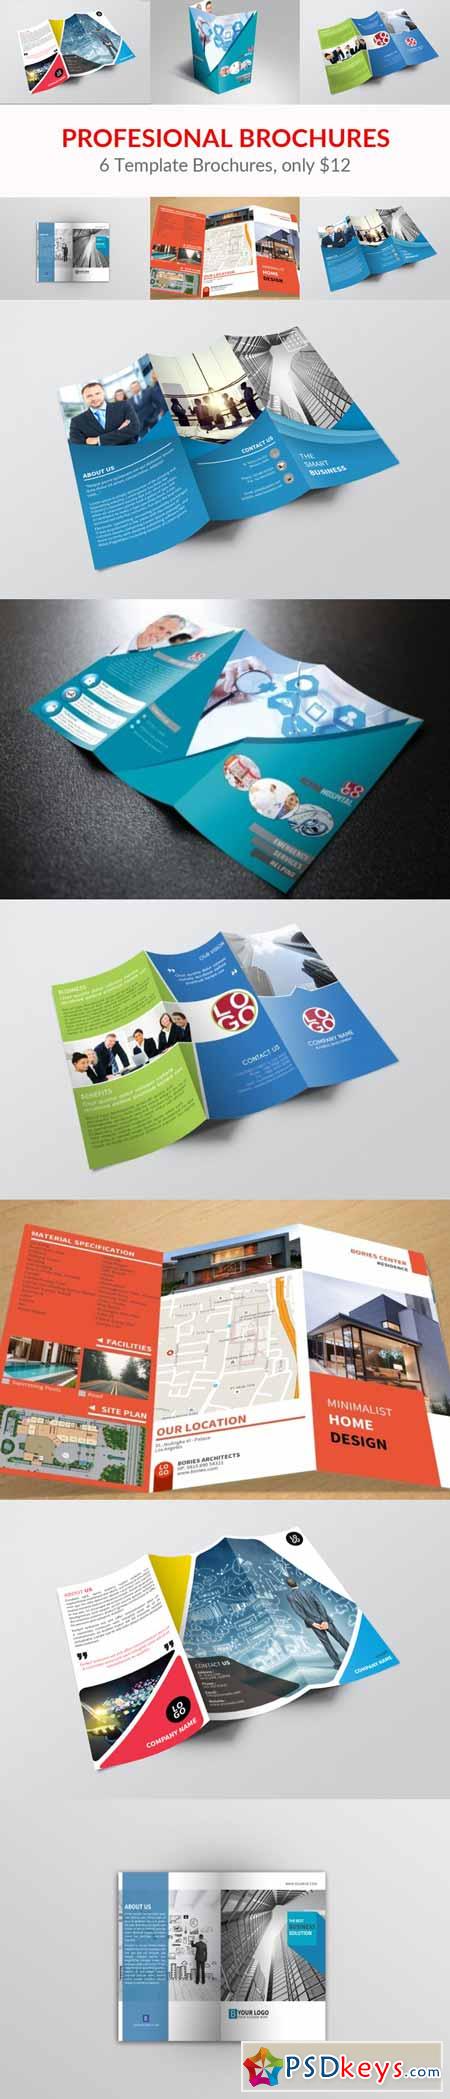 Profesional Brochures Bundle 491708